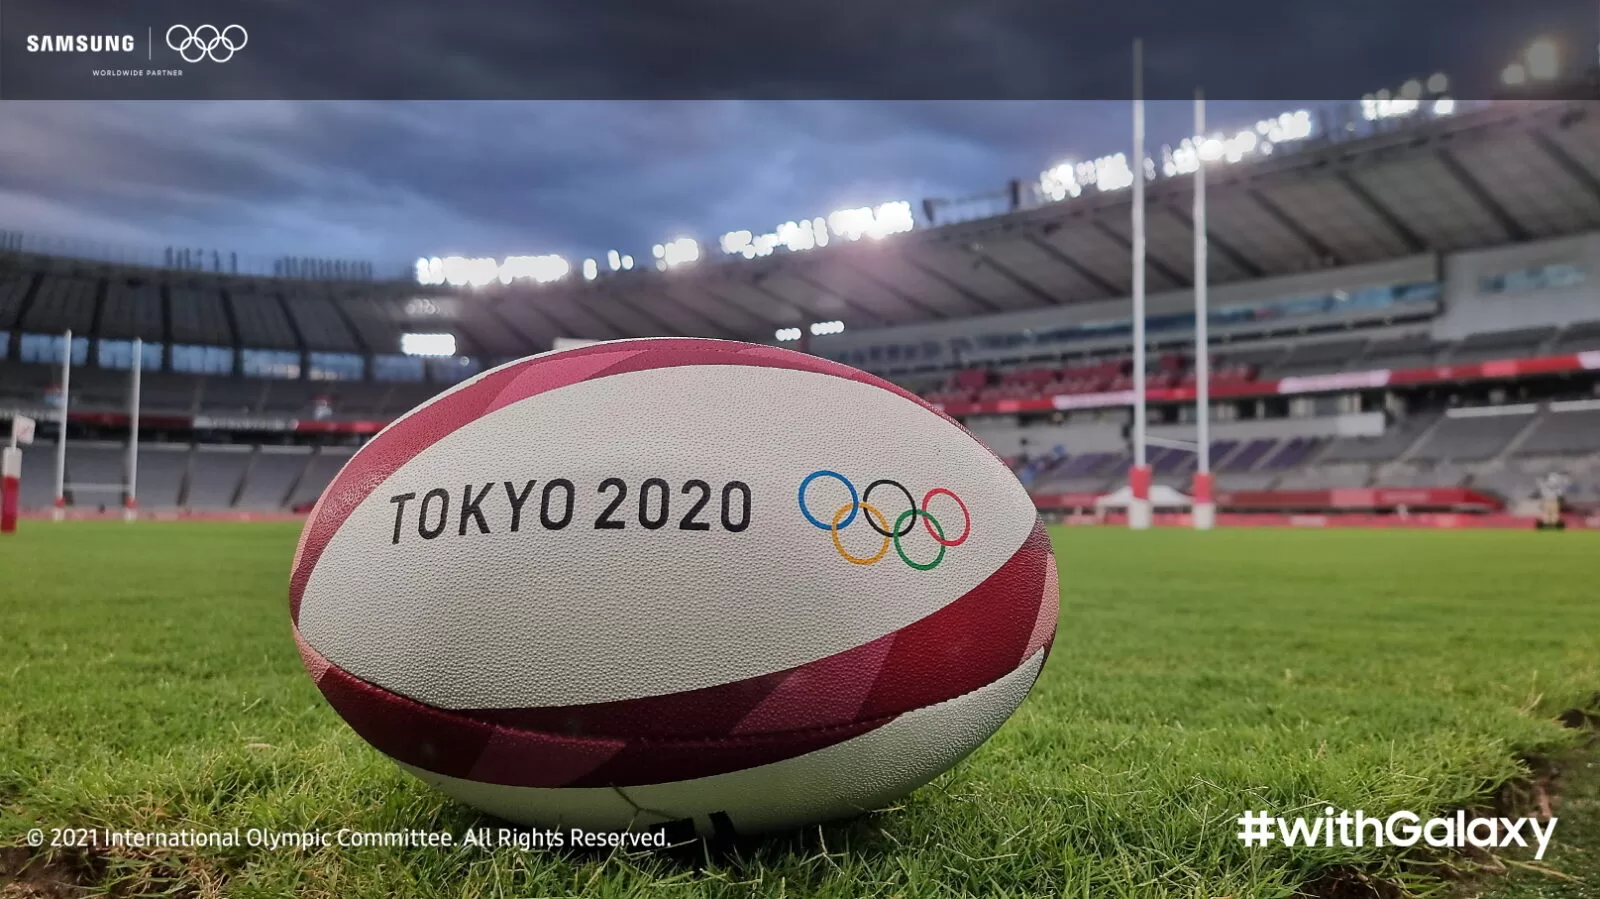 withGalaxy 2 | #withGalaxy | ชมภาพถ่ายส่งตรงจากโอลิมปิก โตเกียว 2020 จากกล้องสมาร์ทโฟน S21 Series 5G